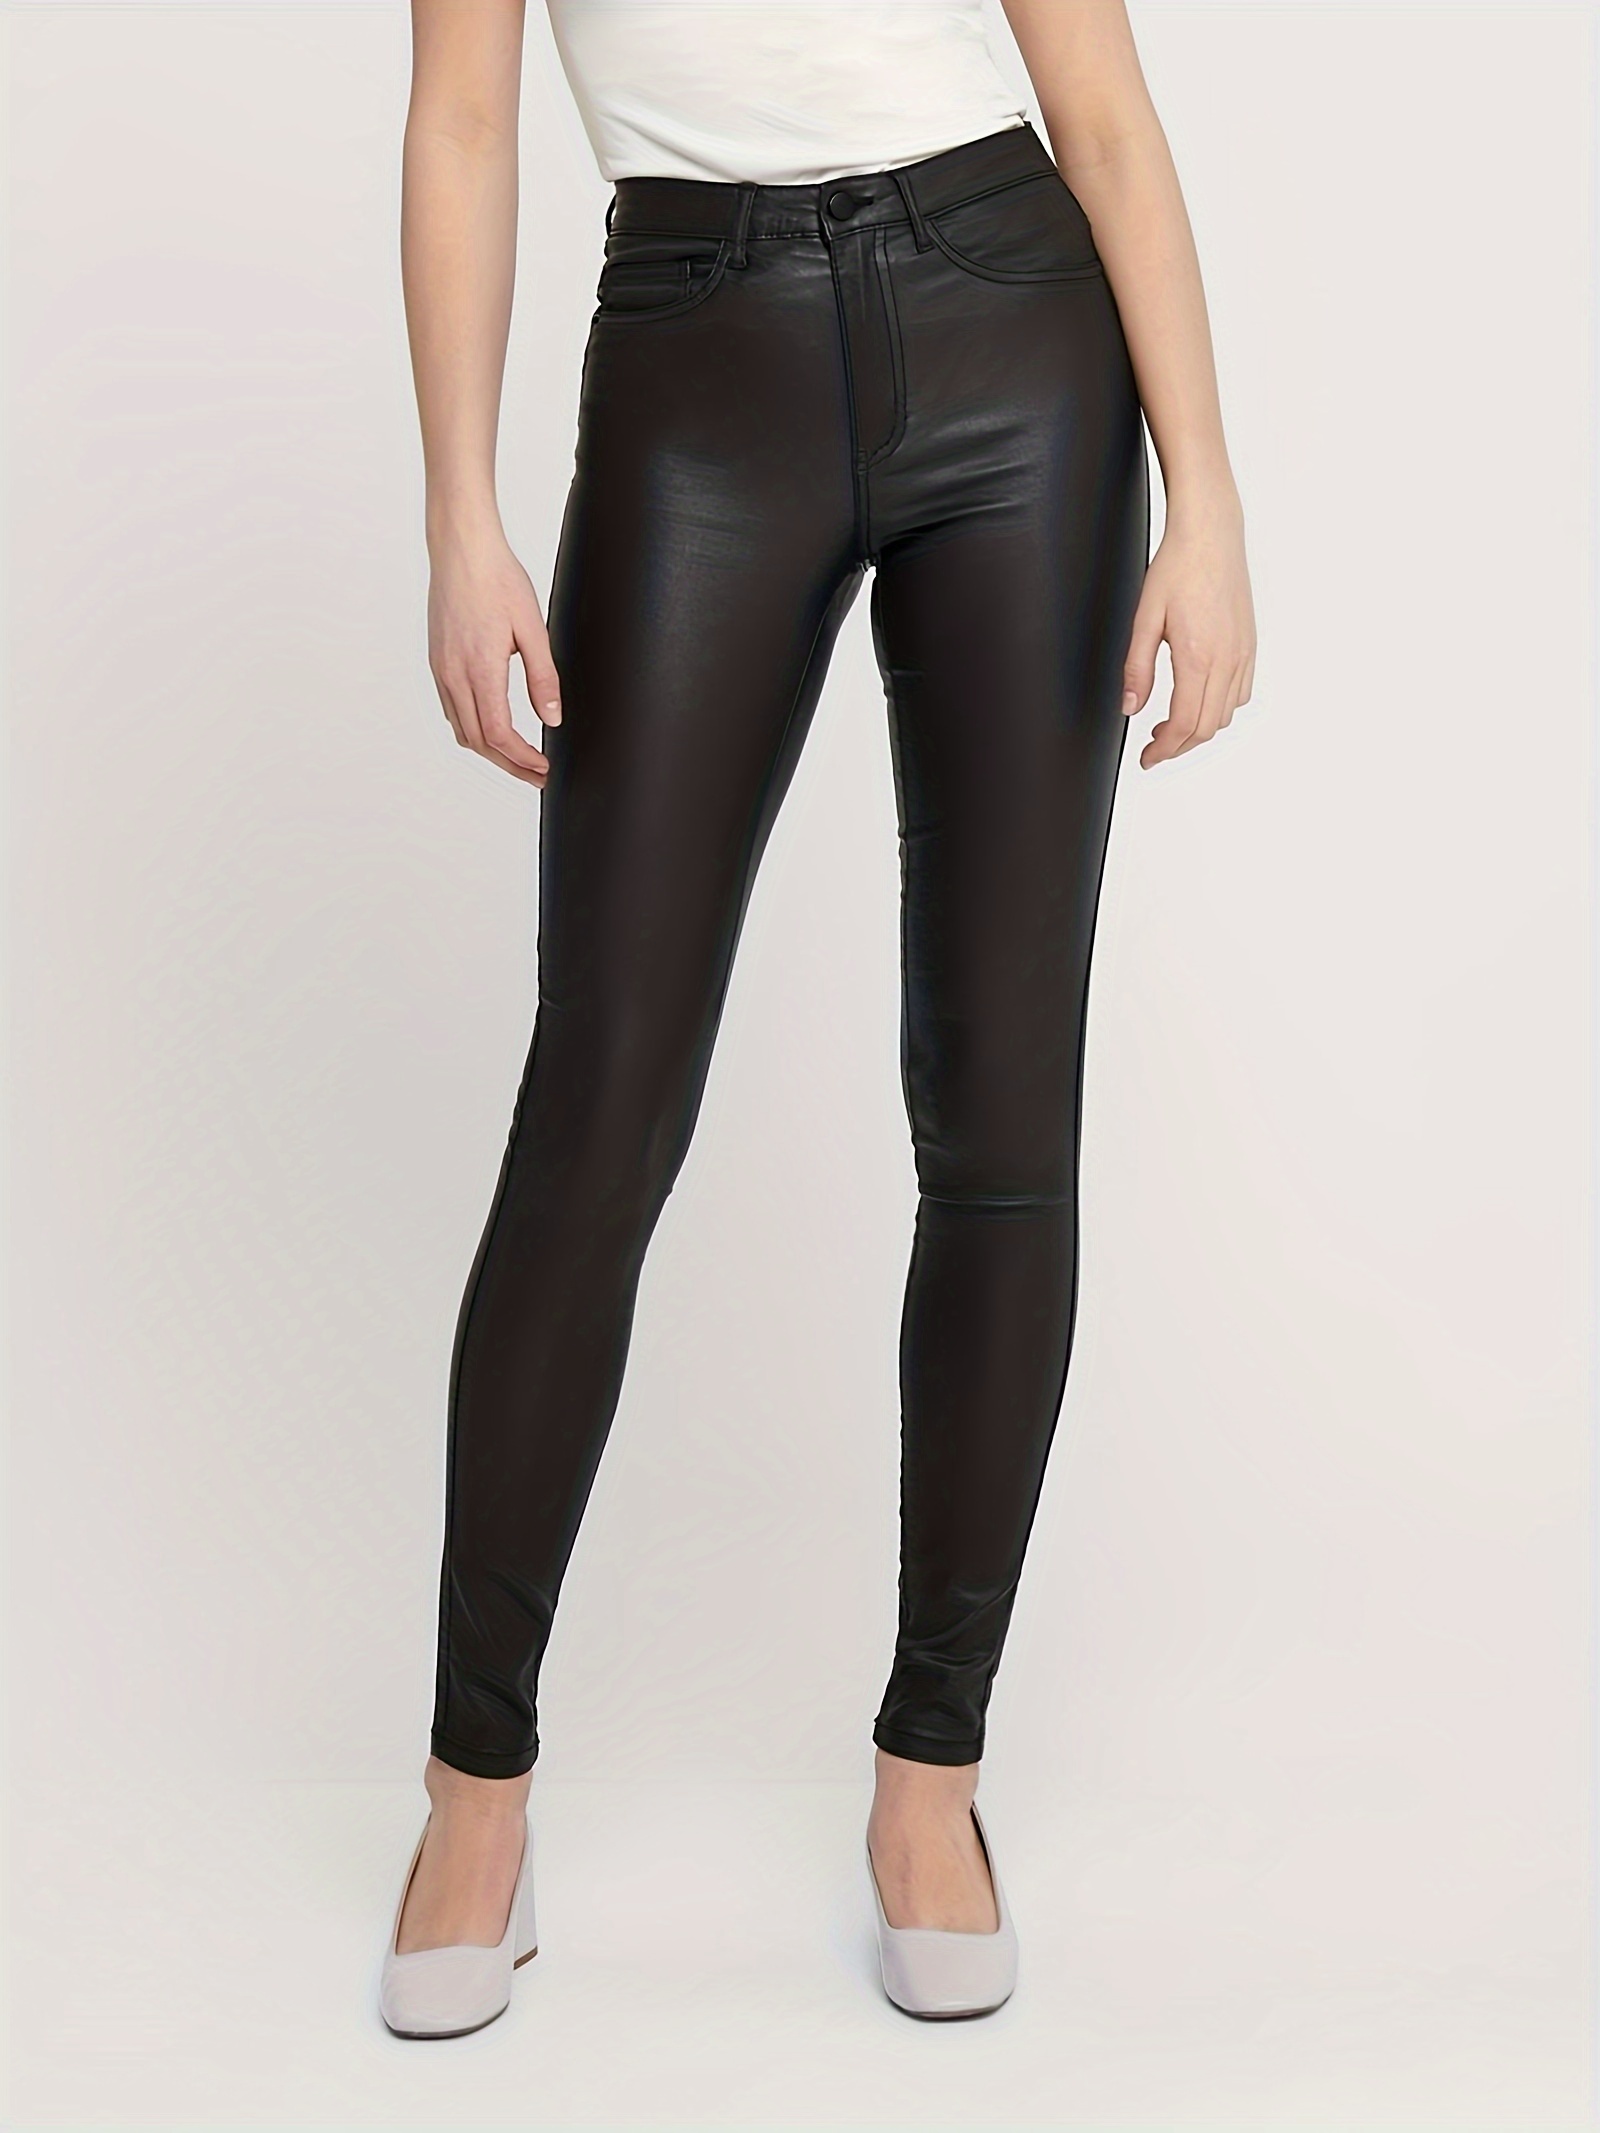 Pantalones de cuero negro para mujer - Leggings de cuero sintético